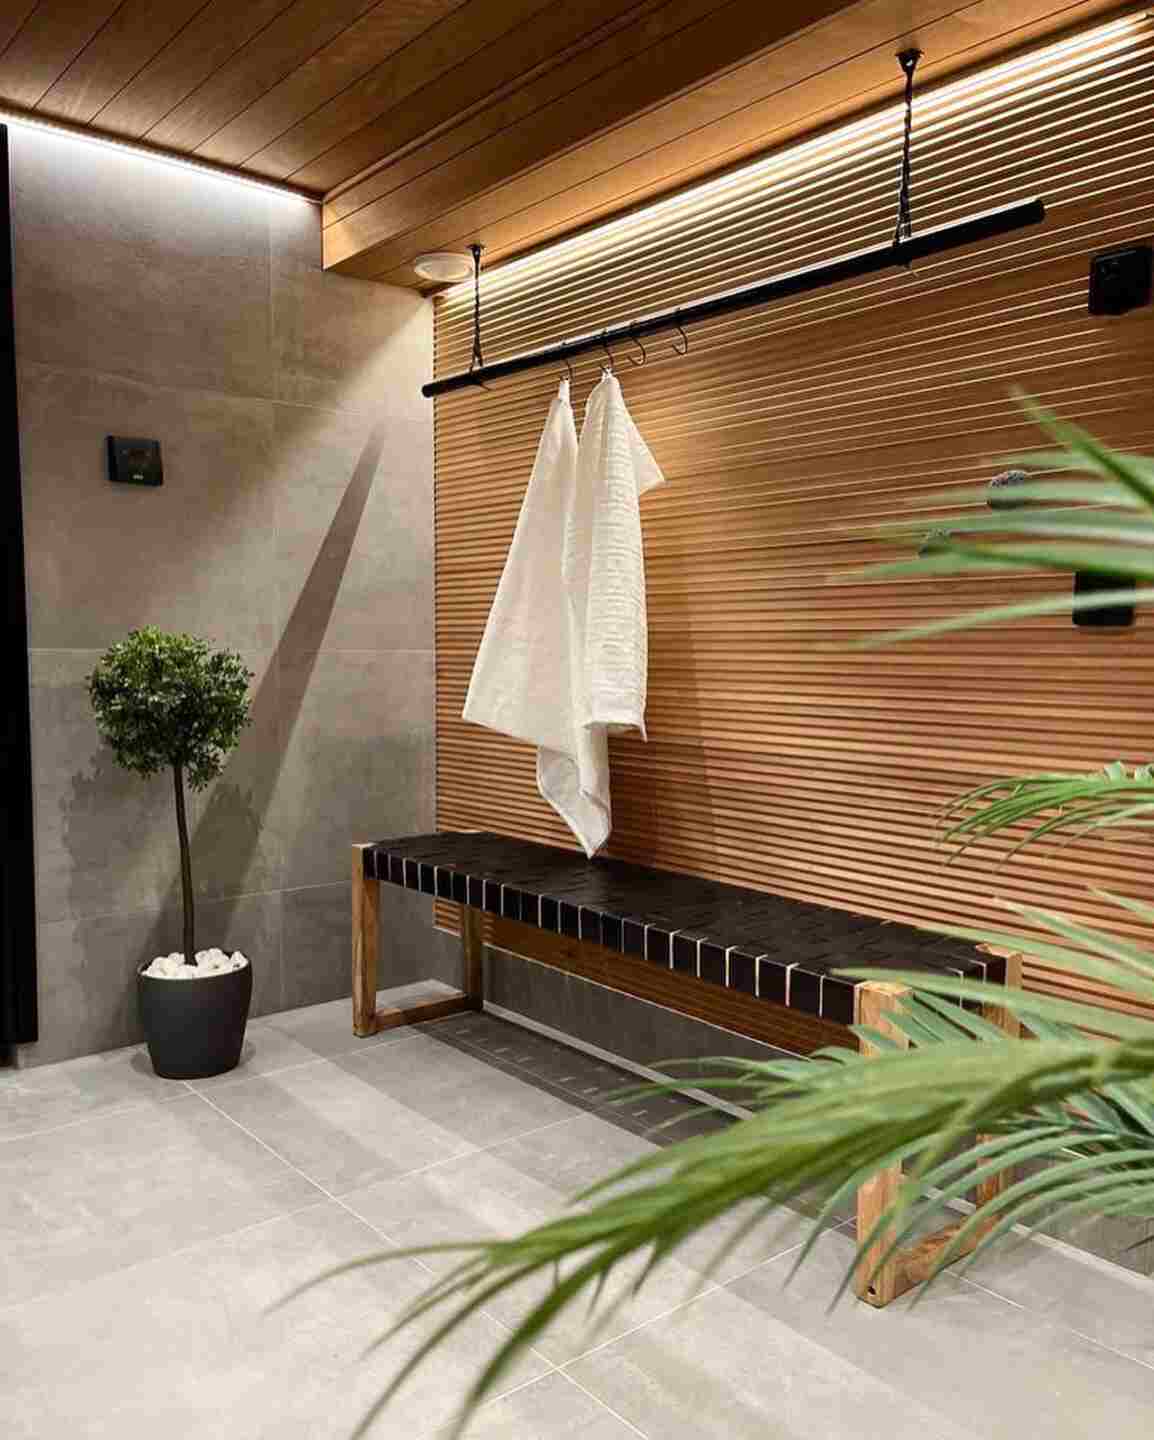 Spa -tunnelmaa kylpyhuoneeseen. Kaunis penkki ja katosta roikkuva pyyhetanko stailaavat tilaa spa -tunnelmaan.